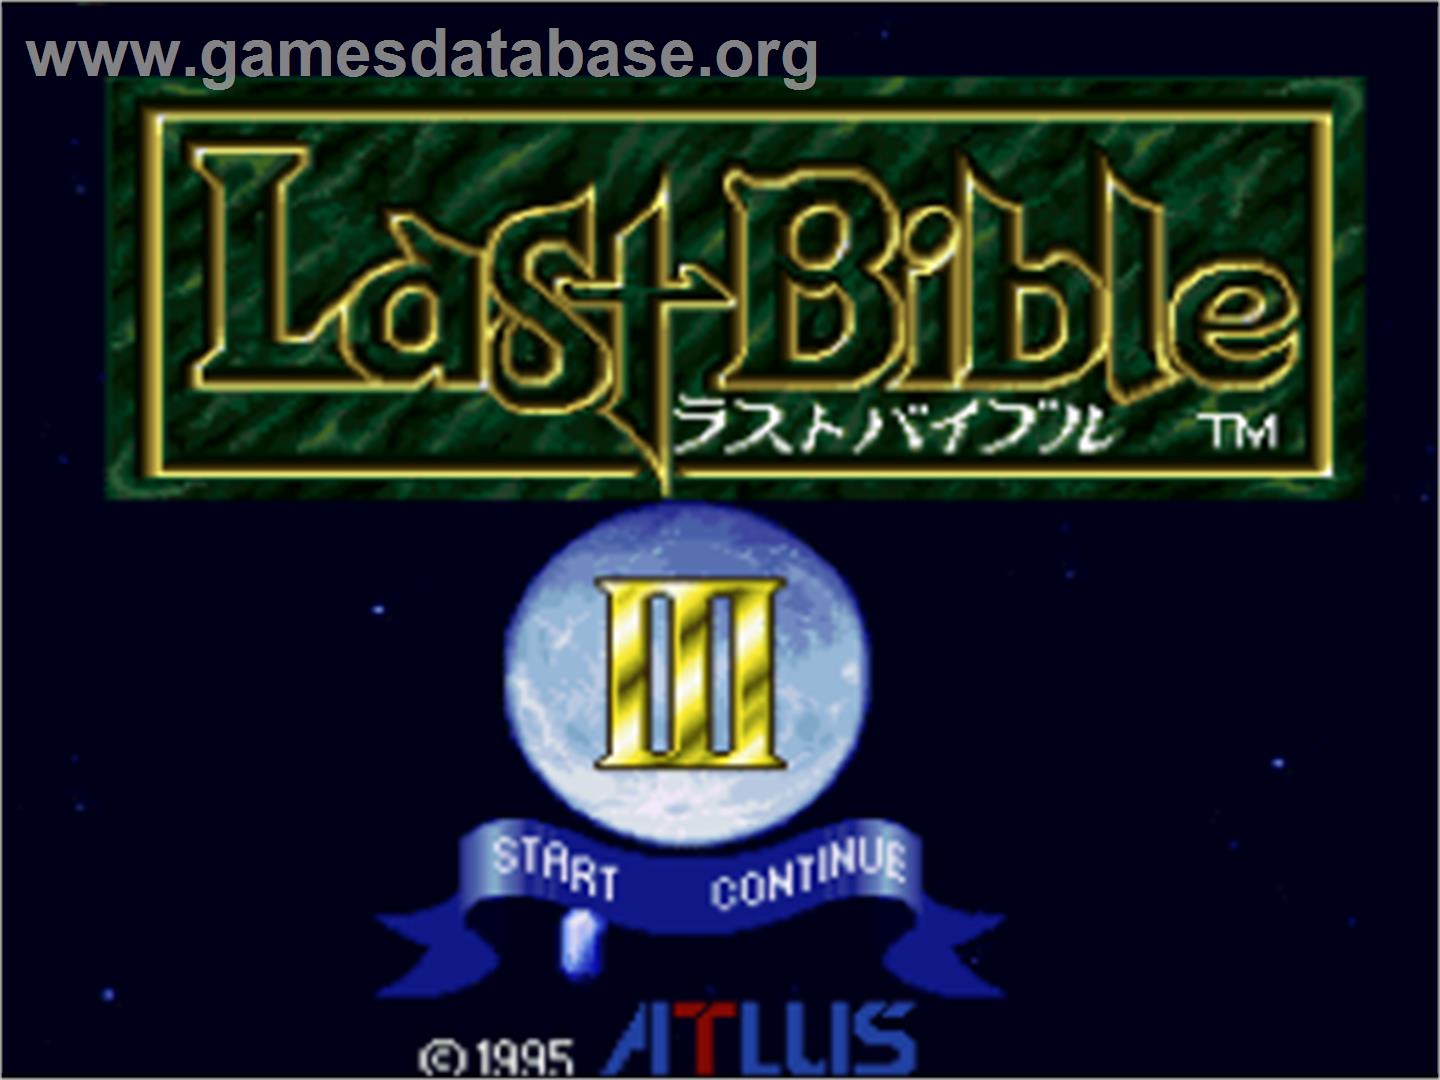 Megami Tensei Gaiden: Last Bible III - Nintendo SNES - Artwork - Title Screen